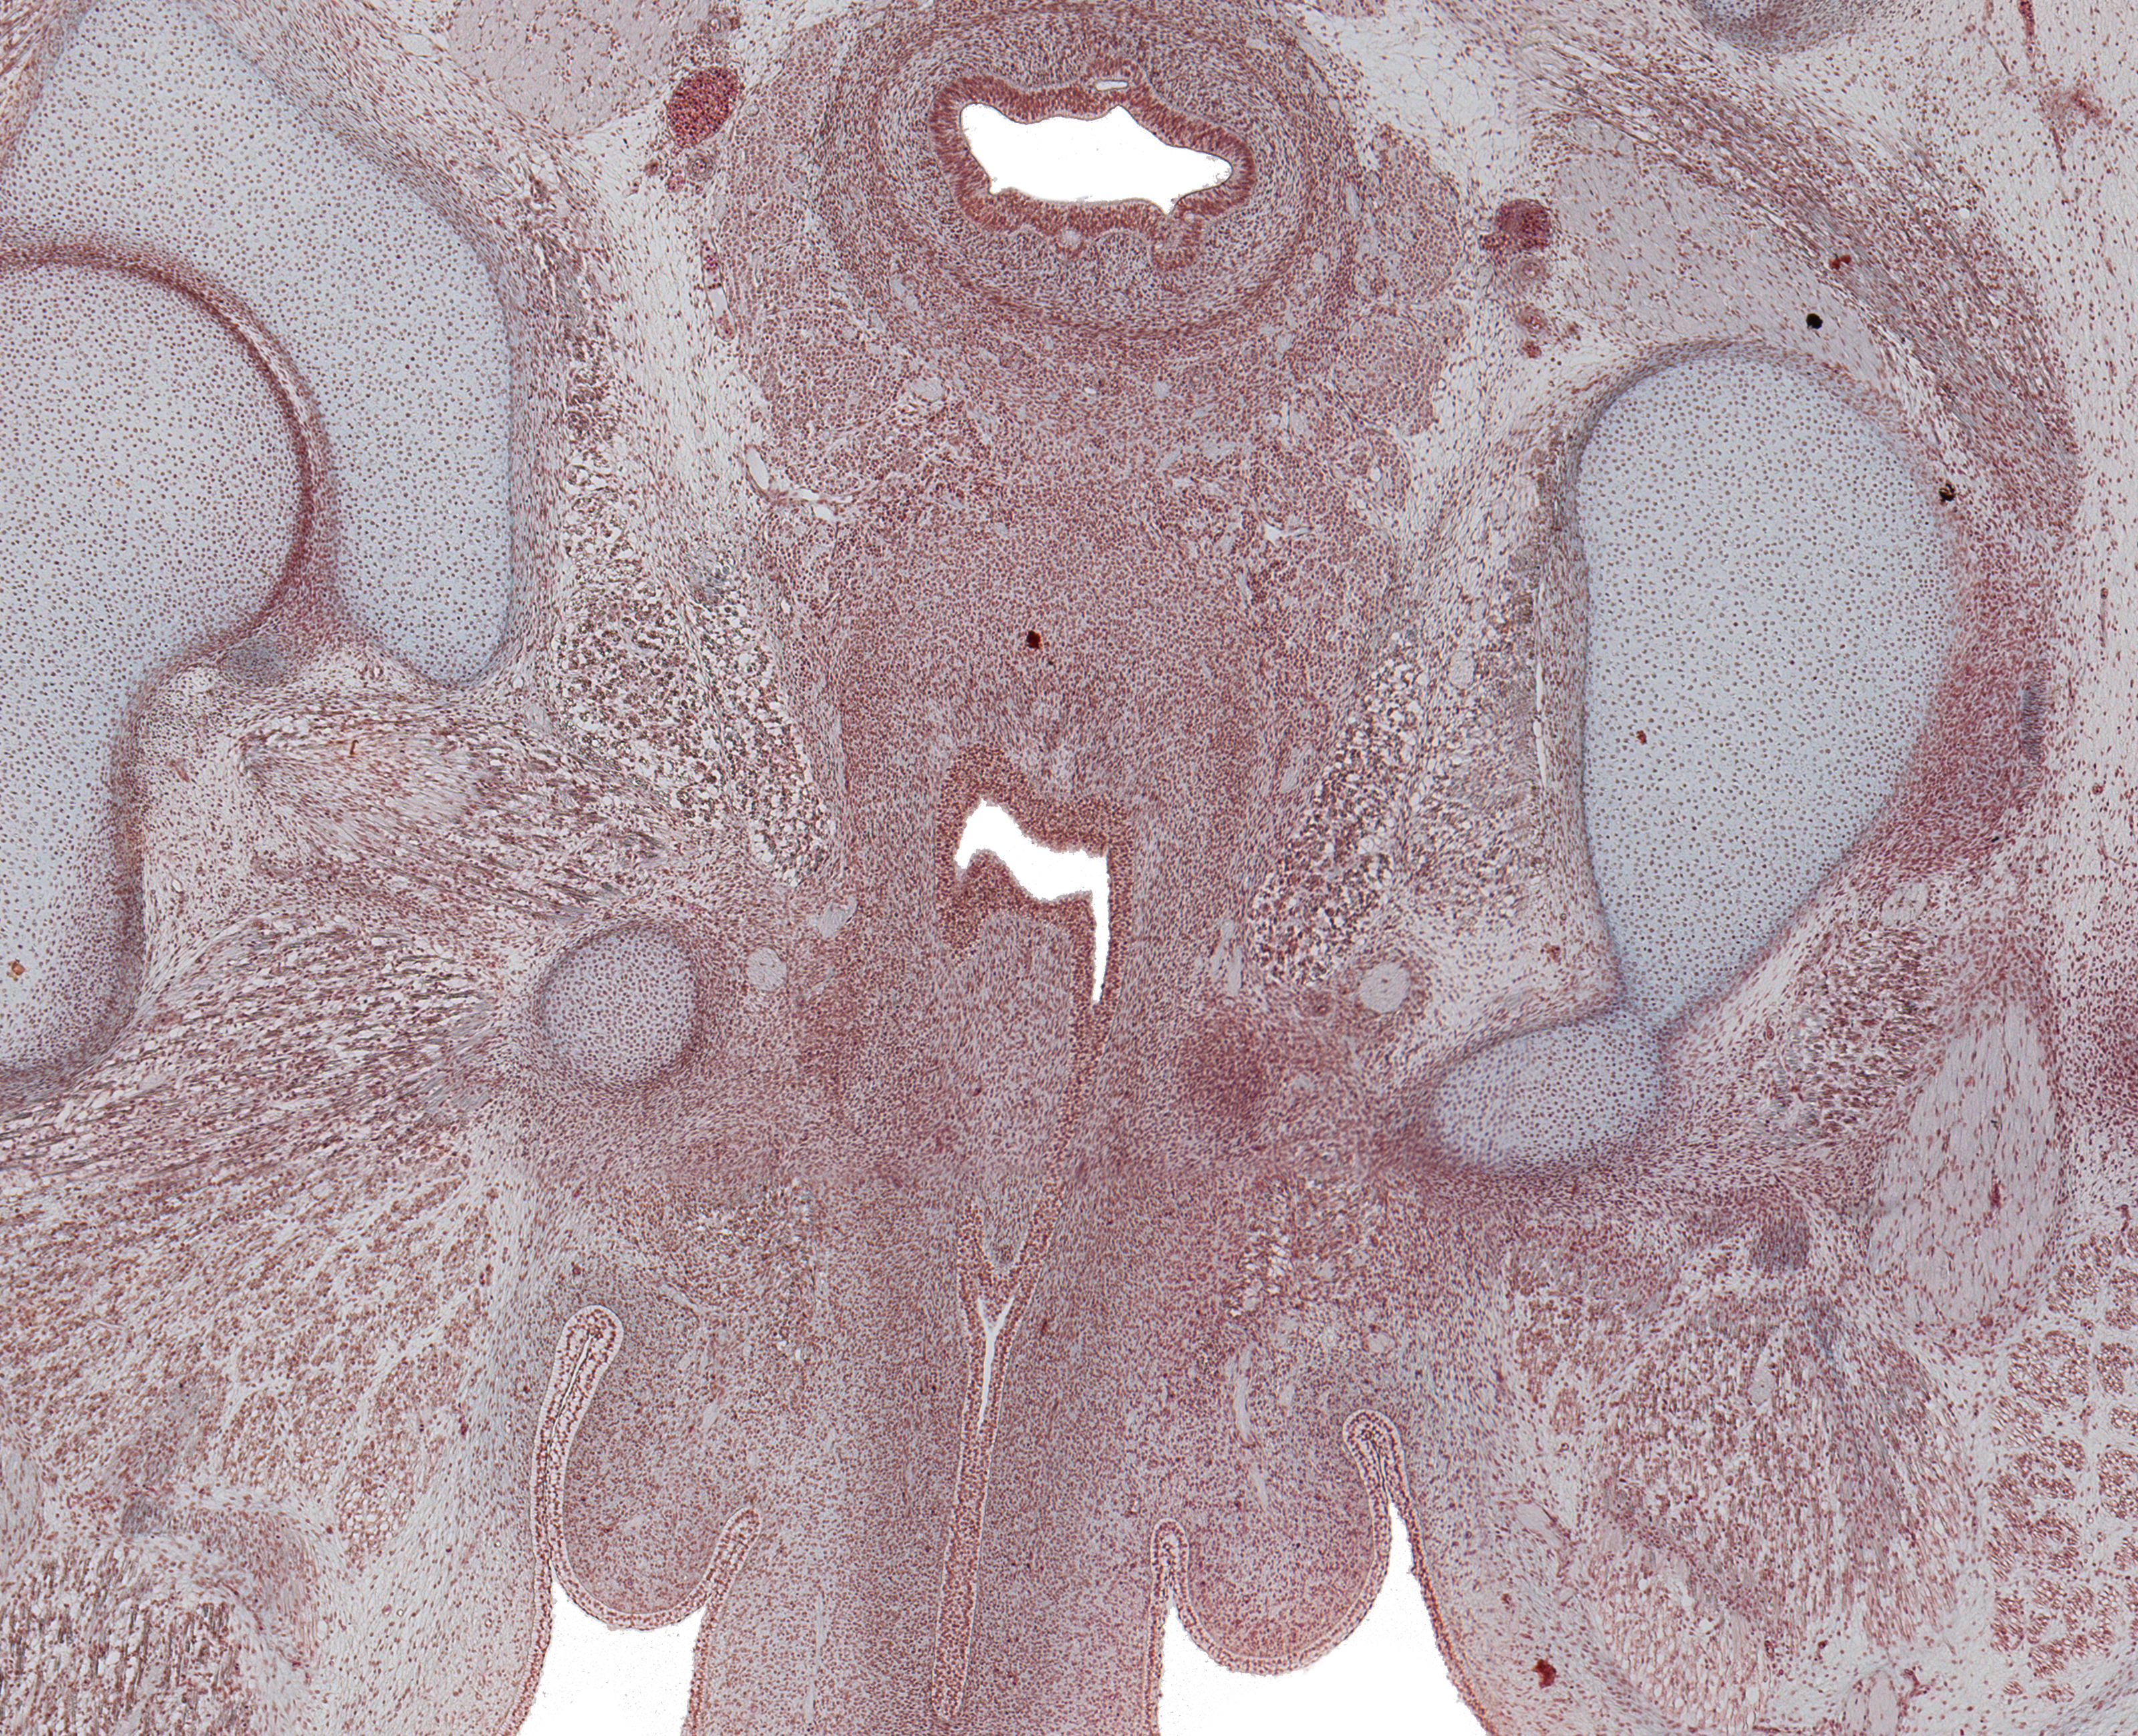 Corpus Spongoisus, Urethra in Penis, Rectum, and Fused Paramesenephric Ducts